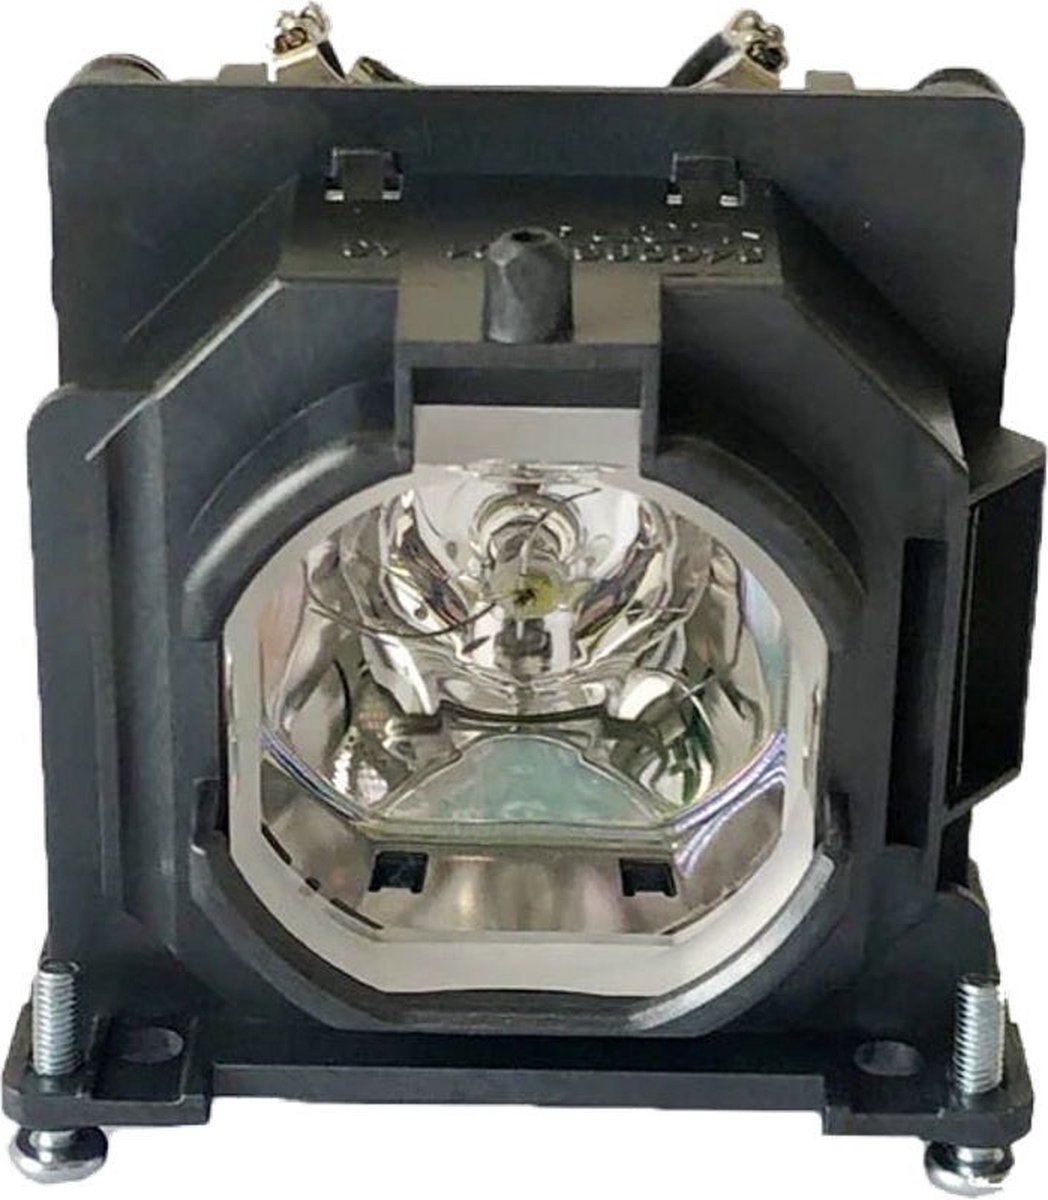 Beamerlamp geschikt voor de PANASONIC PT-LW376 beamer, lamp code ET-LAL510 / ET-LAL510C. Bevat originele UHP lamp, prestaties gelijk aan origineel.